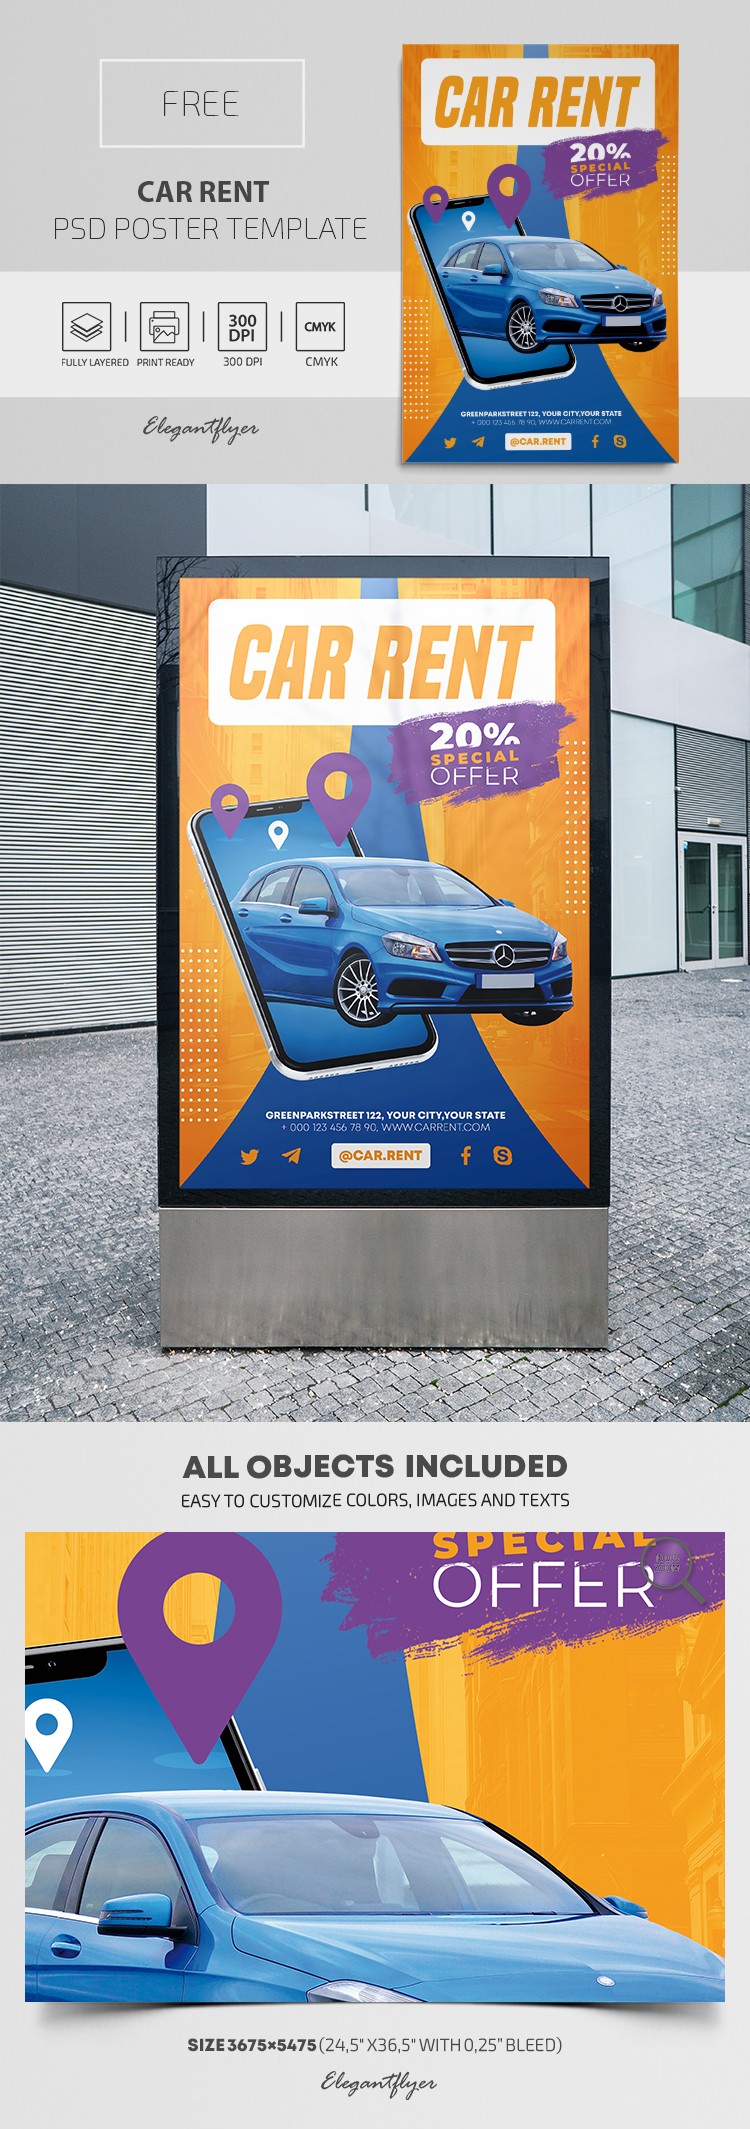 Affiche de location de voiture by ElegantFlyer